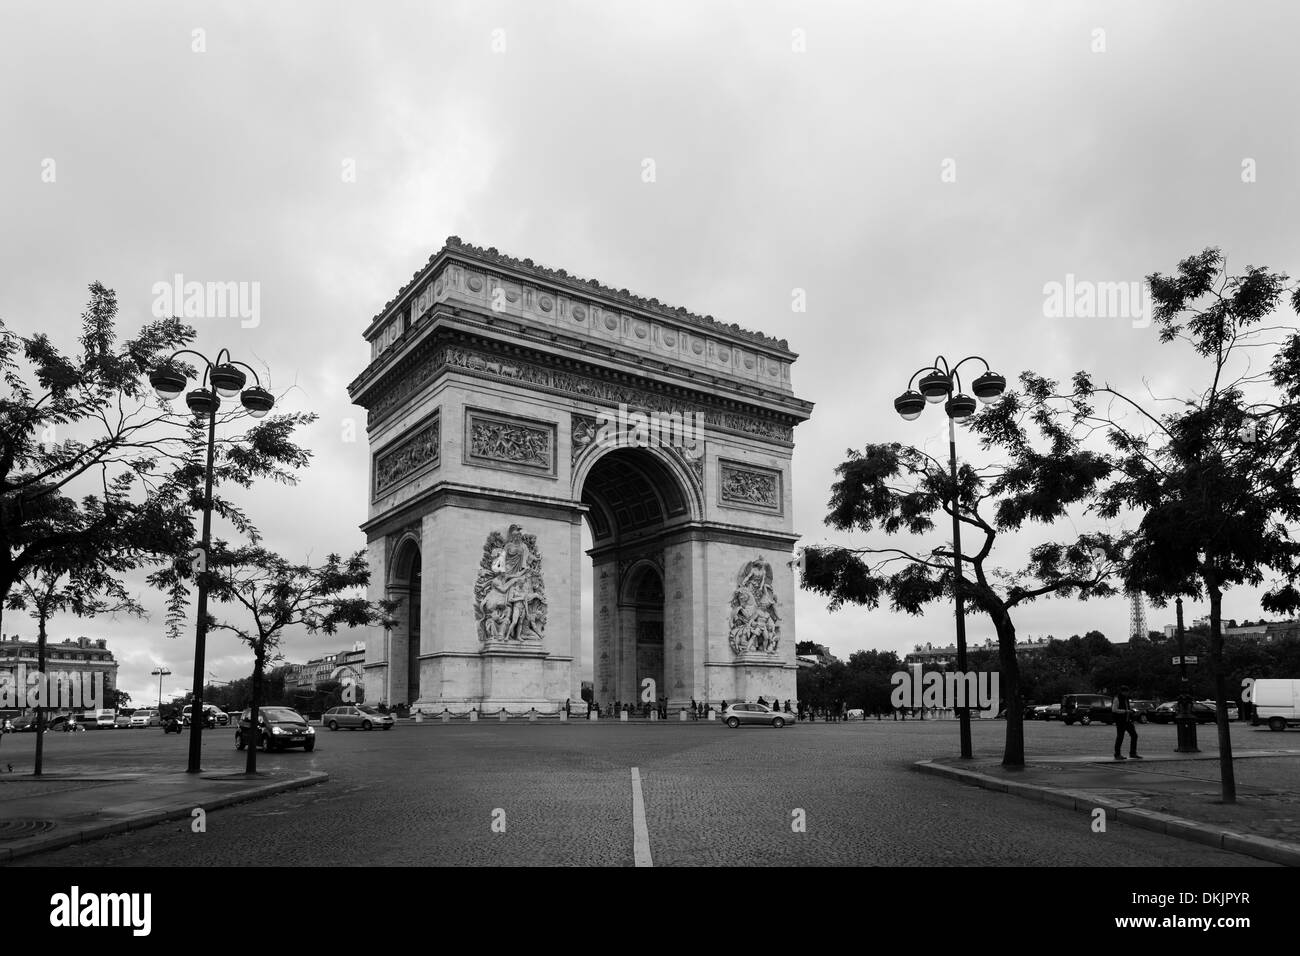 Triumphal Arch/Arc de Triomphe monument, Paris, black and white rendition, Stock Photo